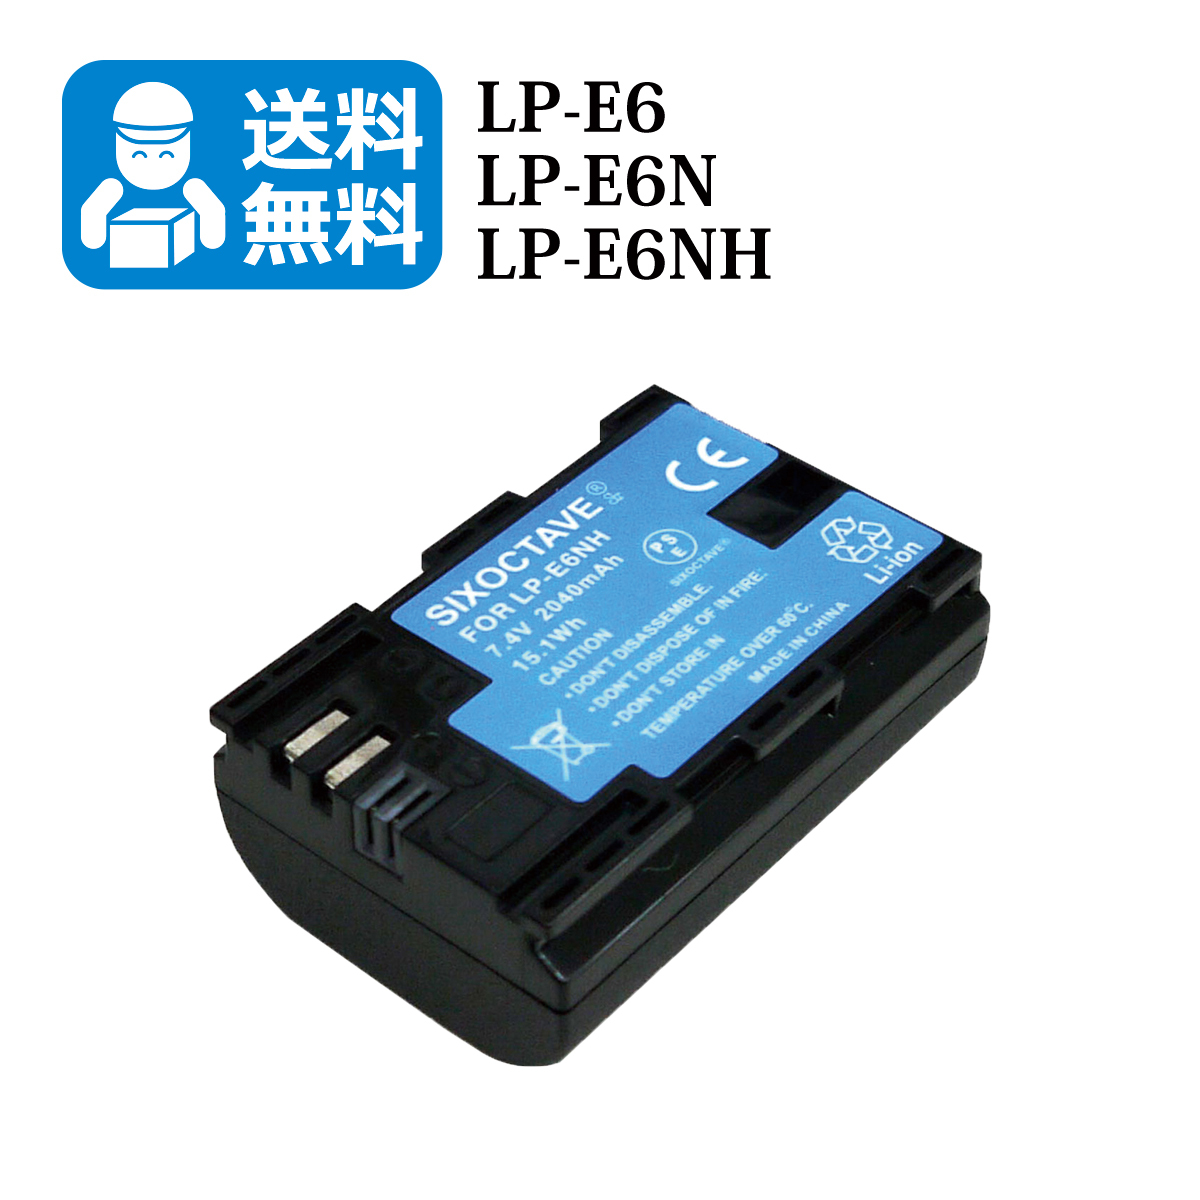 100%正規品 LP-E6 LP-E6N LP-E6NH 2個セット 互換バッテリー CANON キヤノン 純正 充電器 バッテリーチャージャー  で充電可能 残量表示可能 イオス EOS